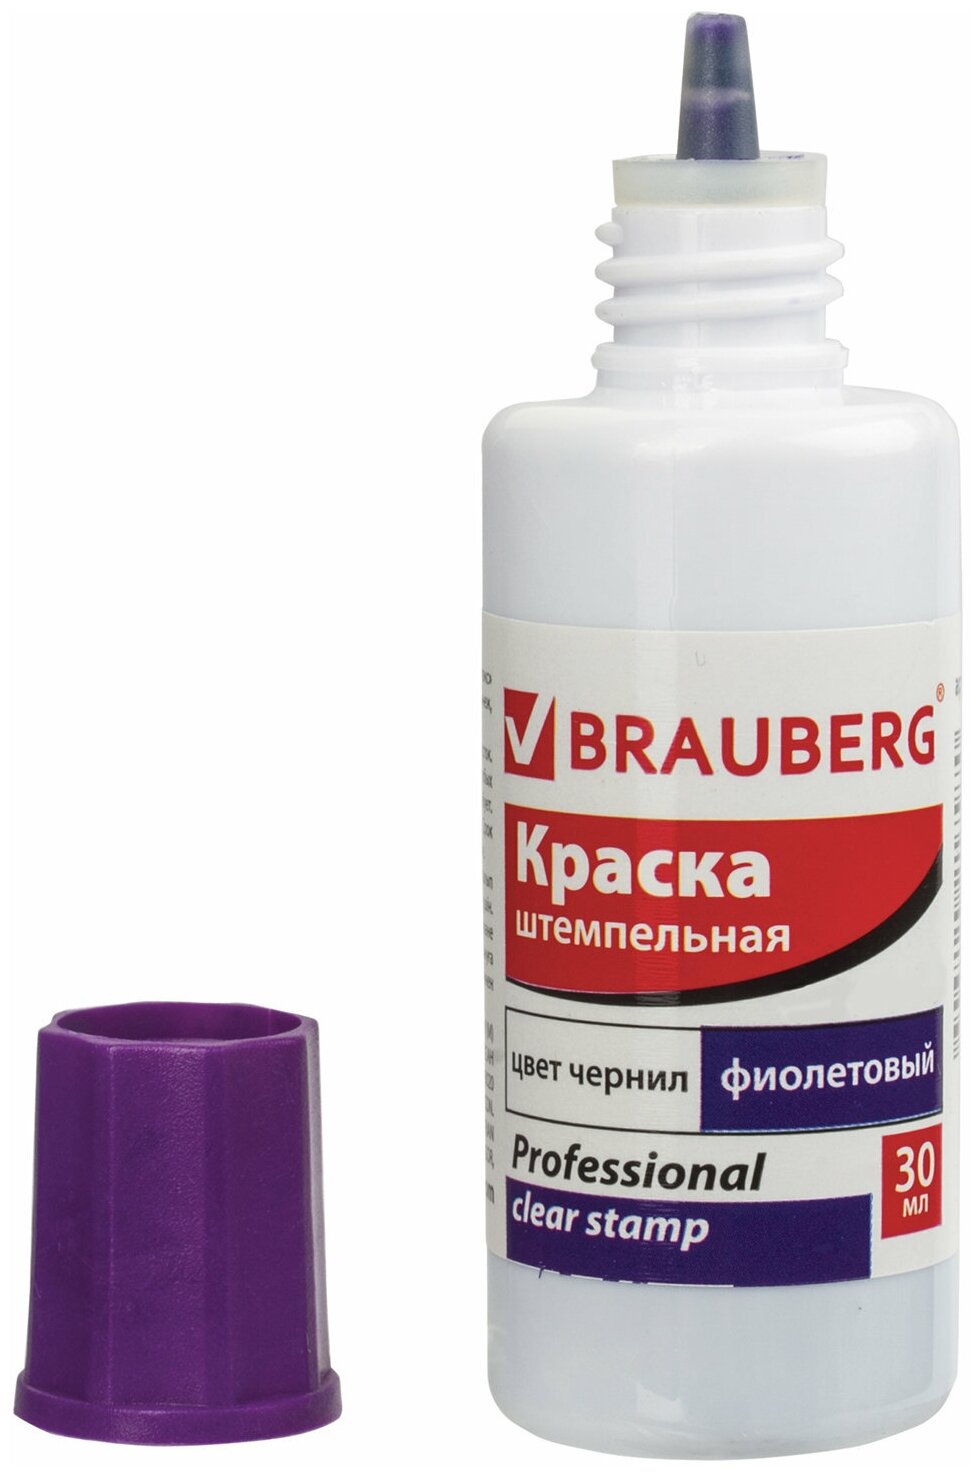 Краска штемпельная Brauberg Professional, clear stamp, фиолетовая, 30 мл, на водной основе (227982)